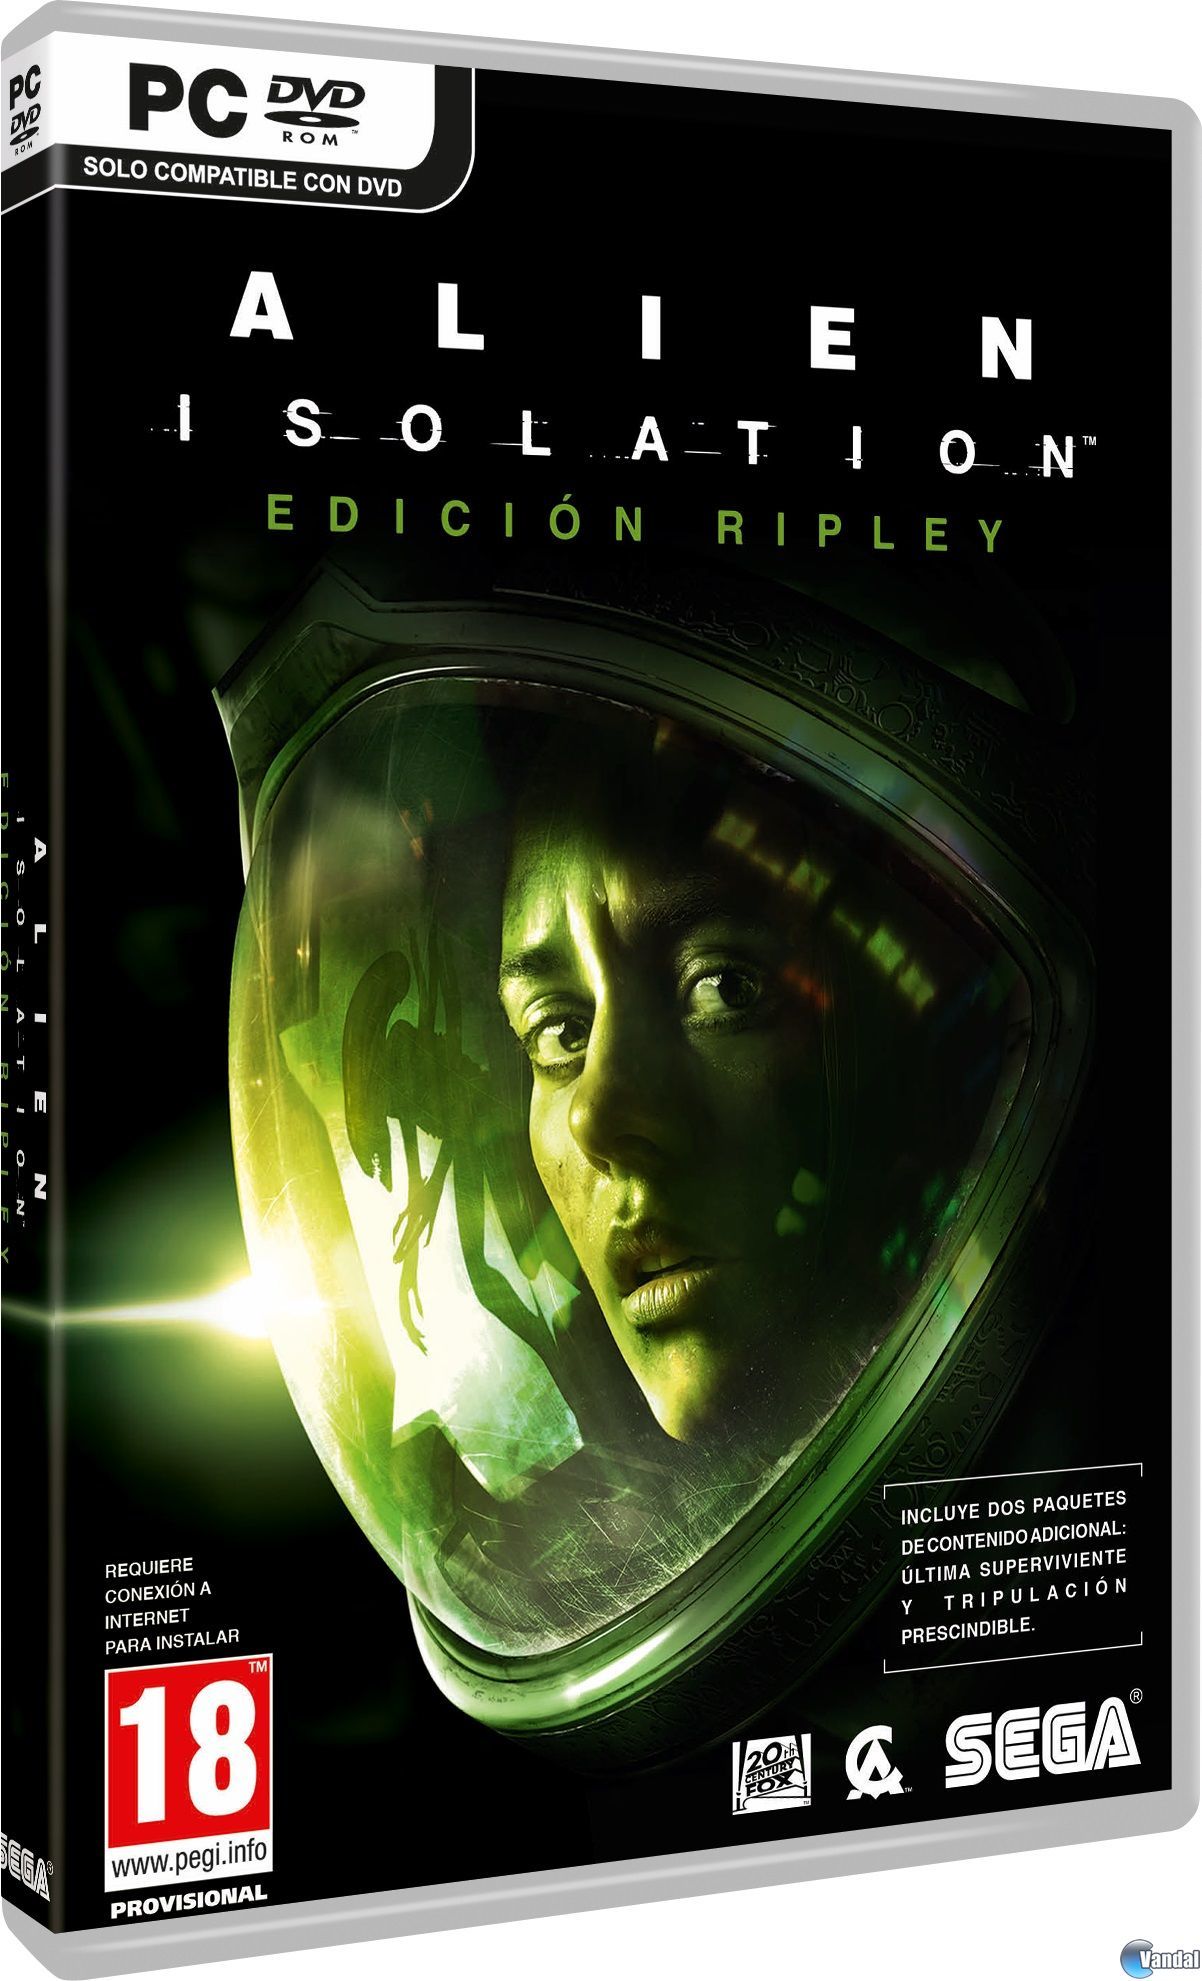 Alien: Isolation a experincia da saga Alien mais